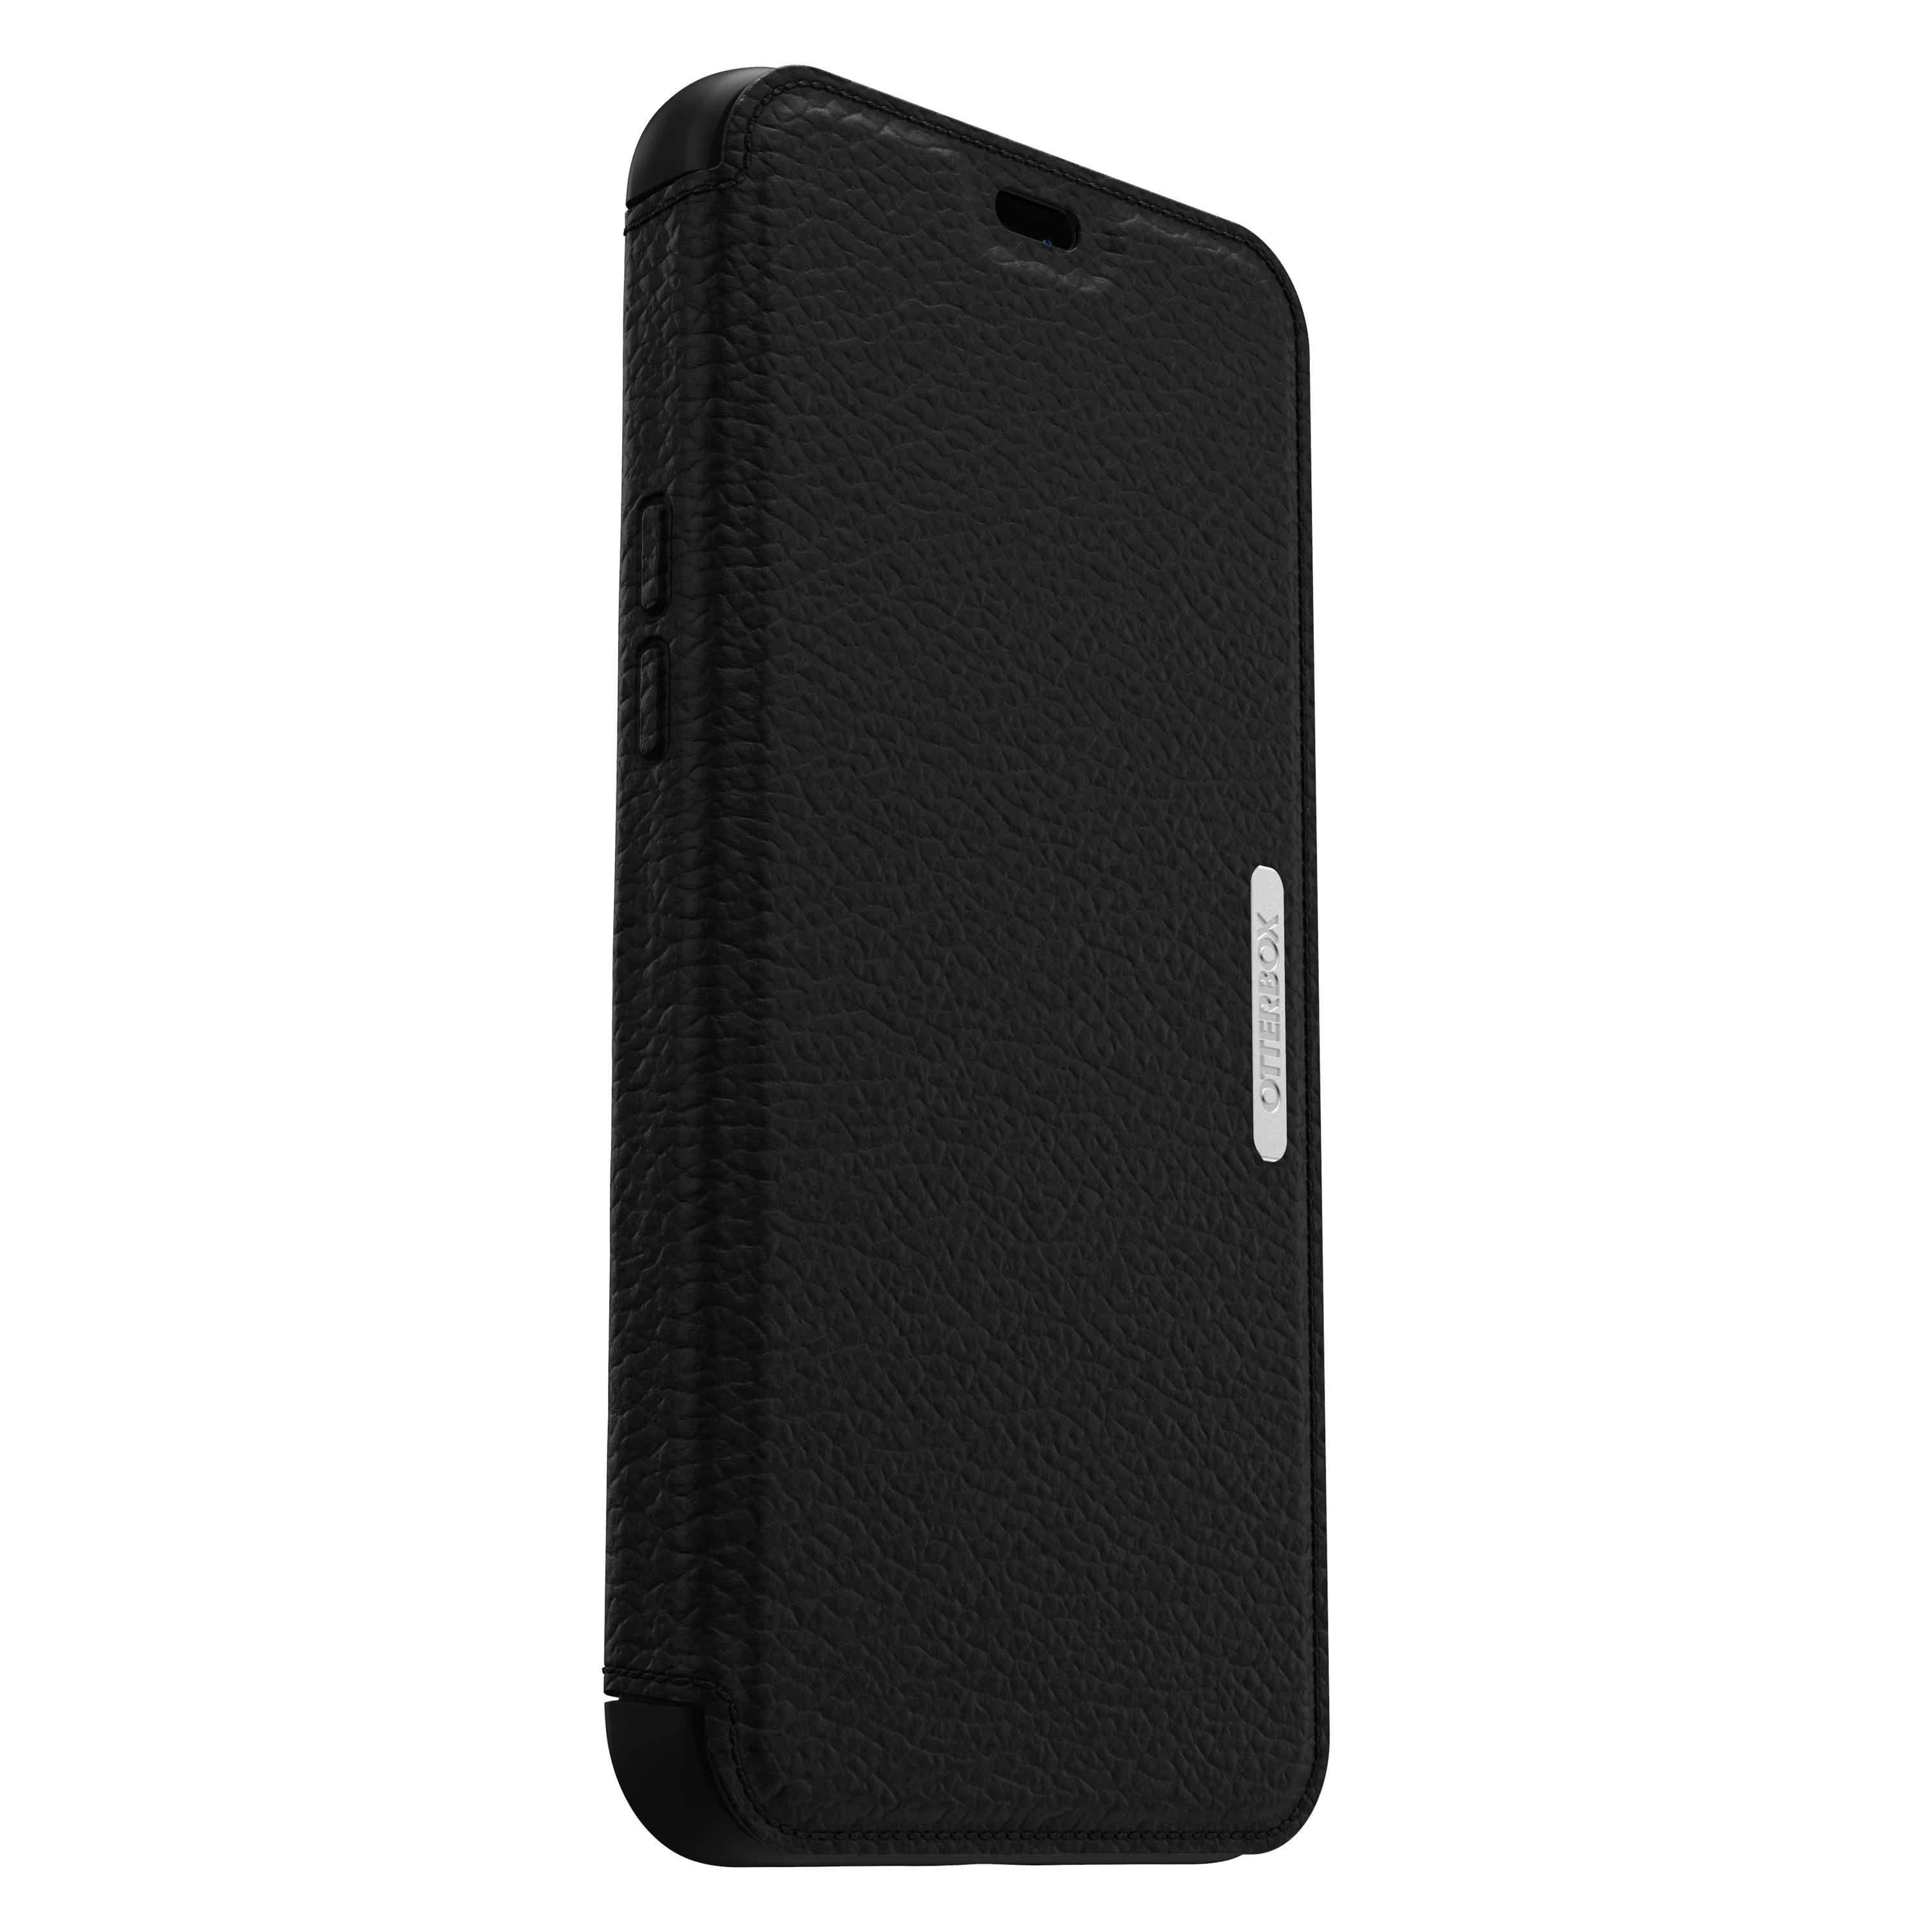 Strada Case iPhone 12 Pro Max Black